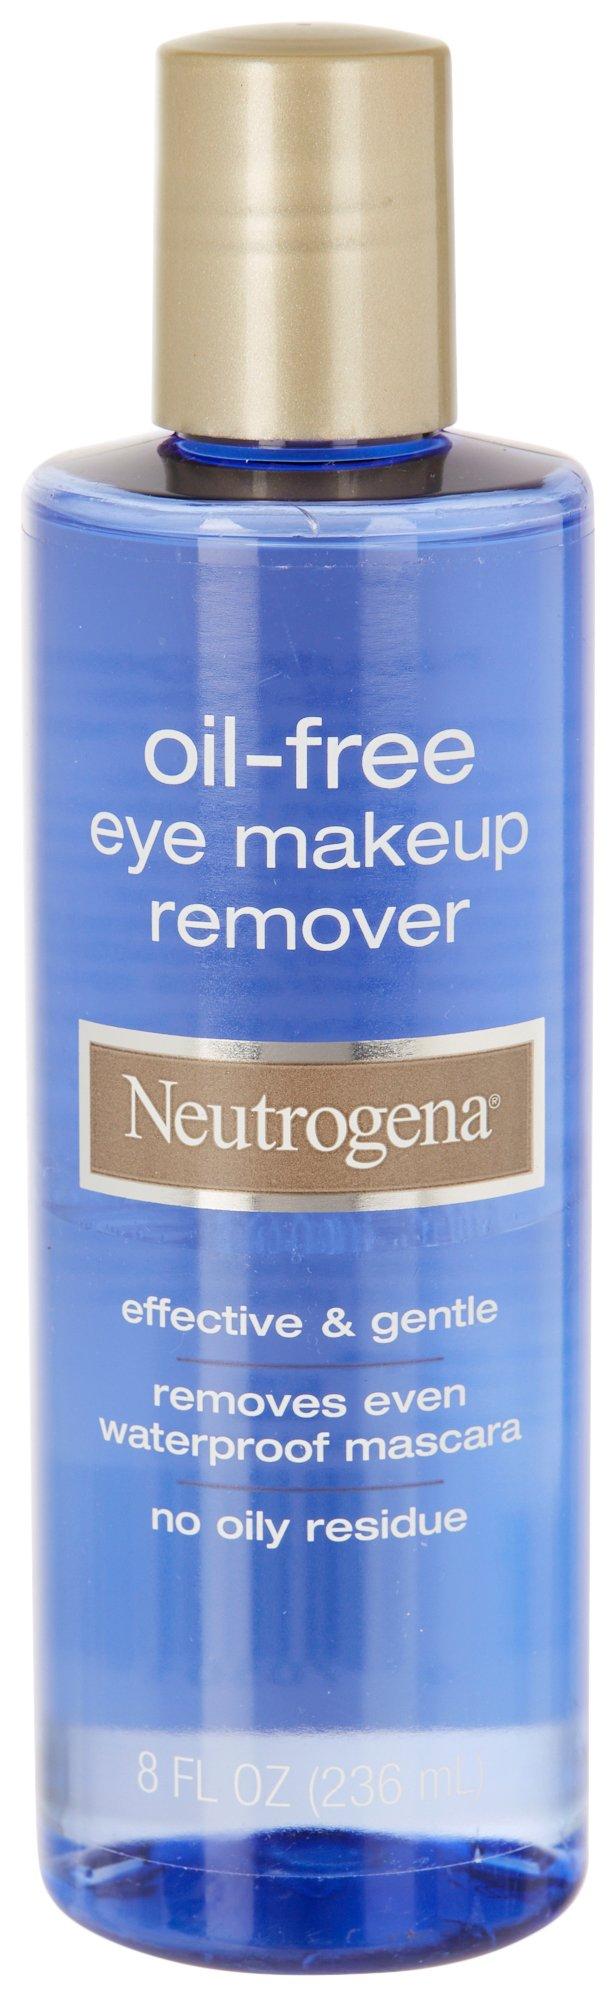 Neutrogena 8 oz Oil-Free Eye Makeup Remover